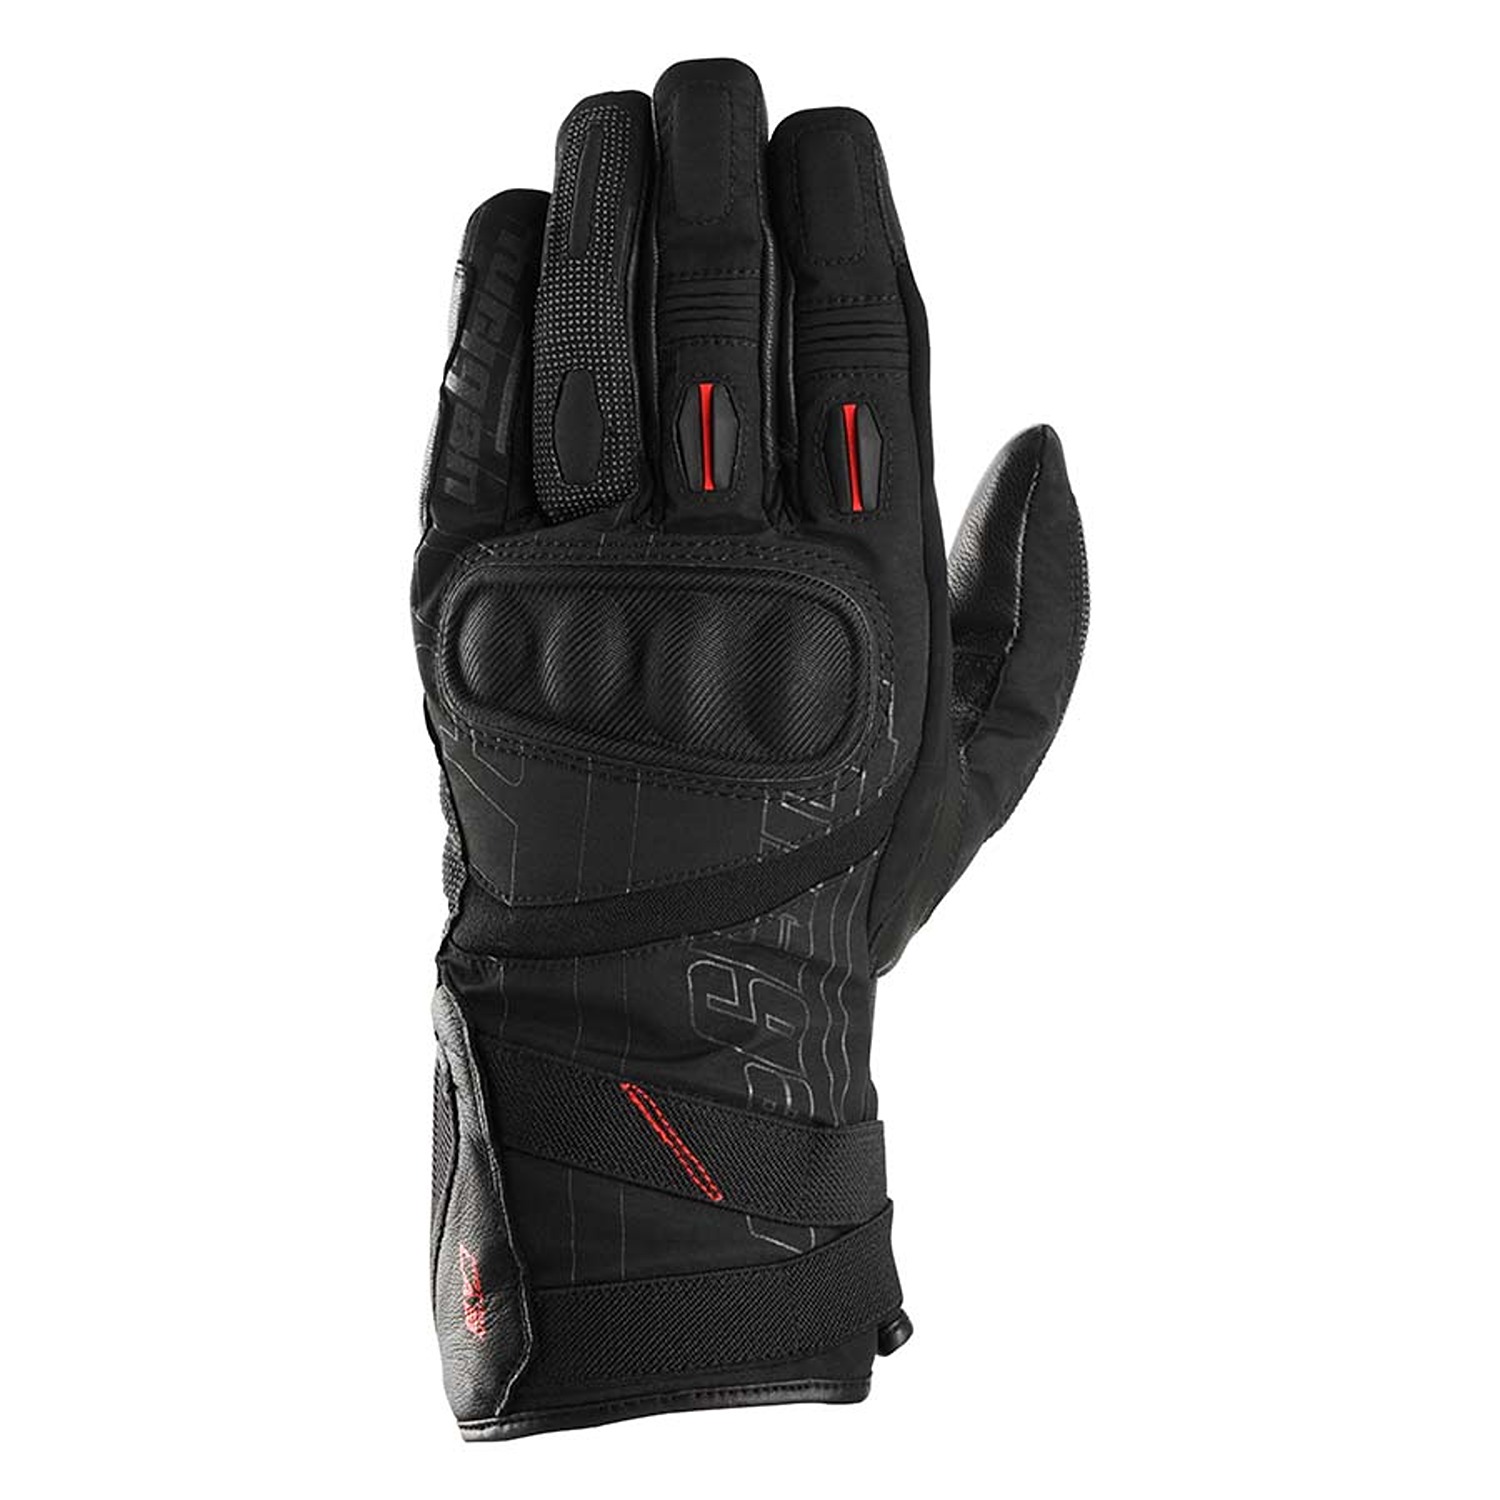 Image of Furygan Nomad Gloves Black Size L EN